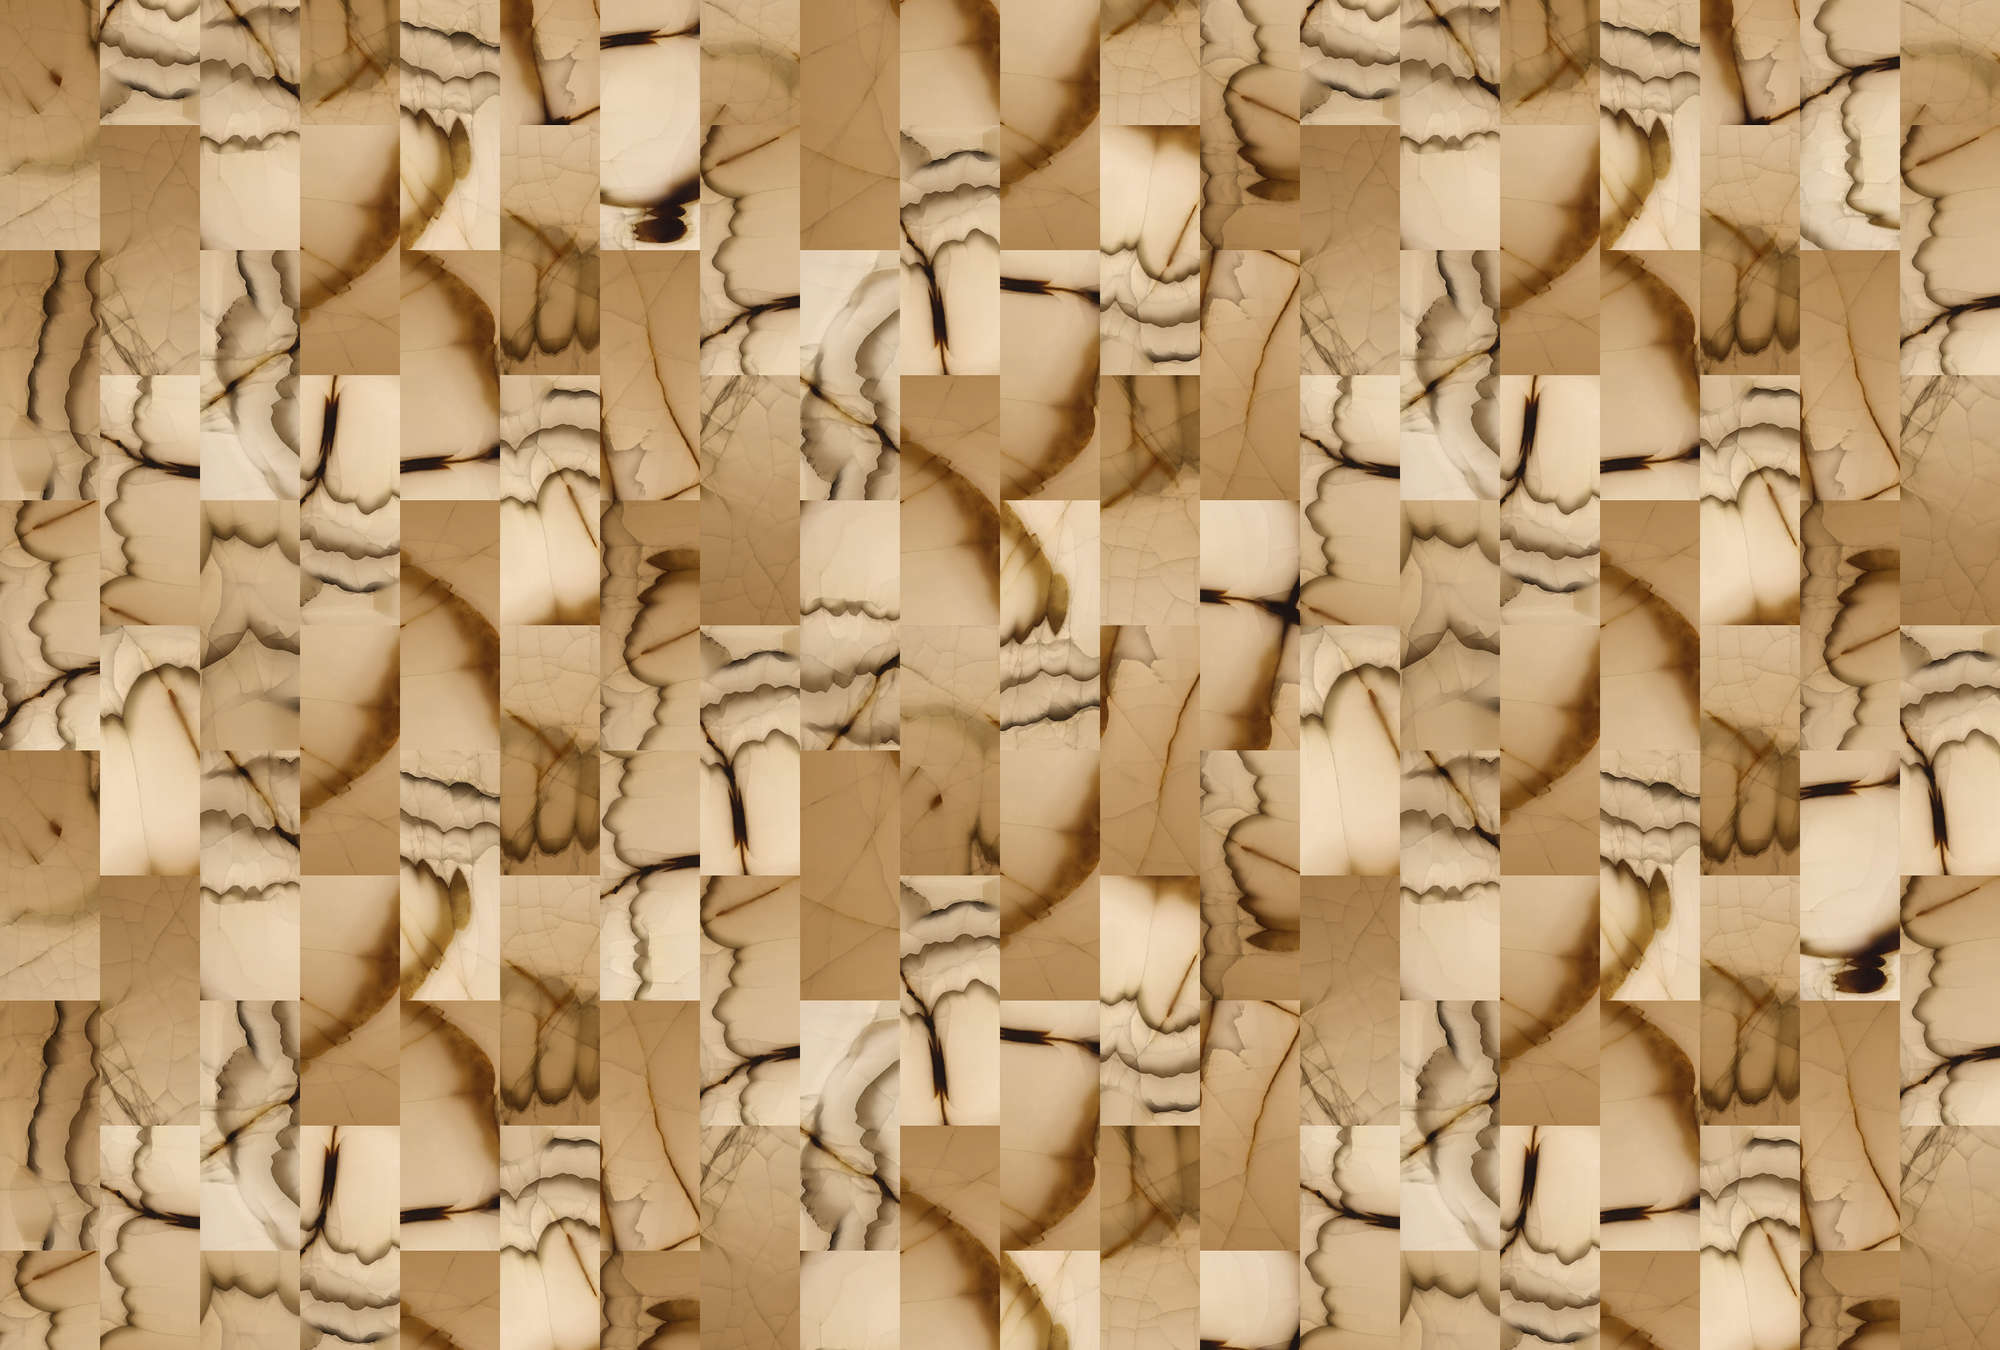             Cut stone 1 - Papier peint abstrait imitation pierre - beige, marron | nacré intissé lisse
        